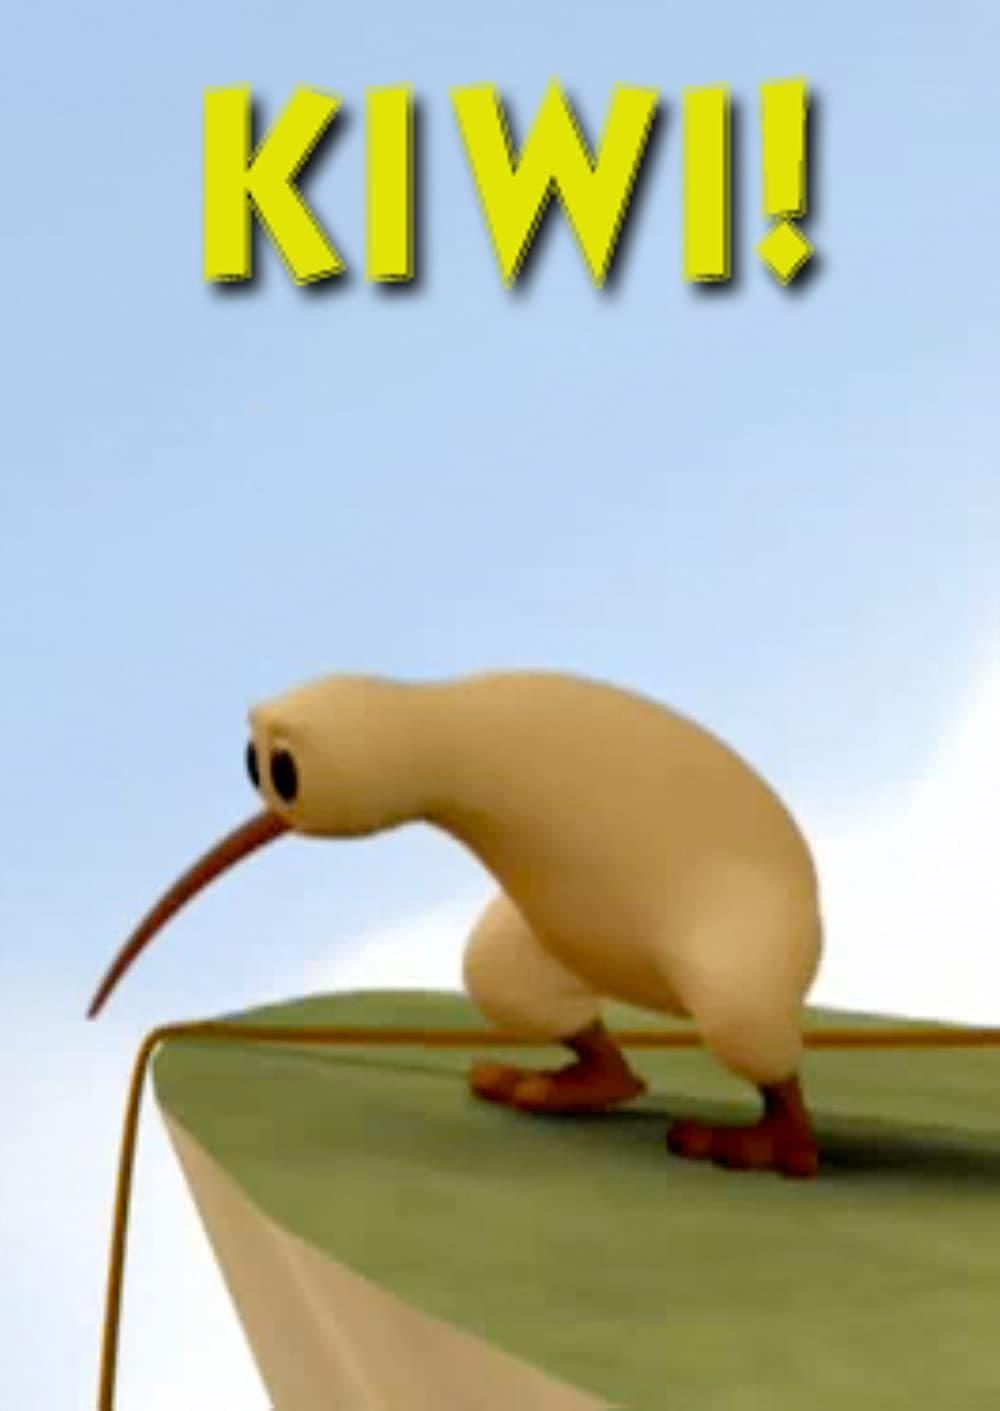 Kiwi! poster